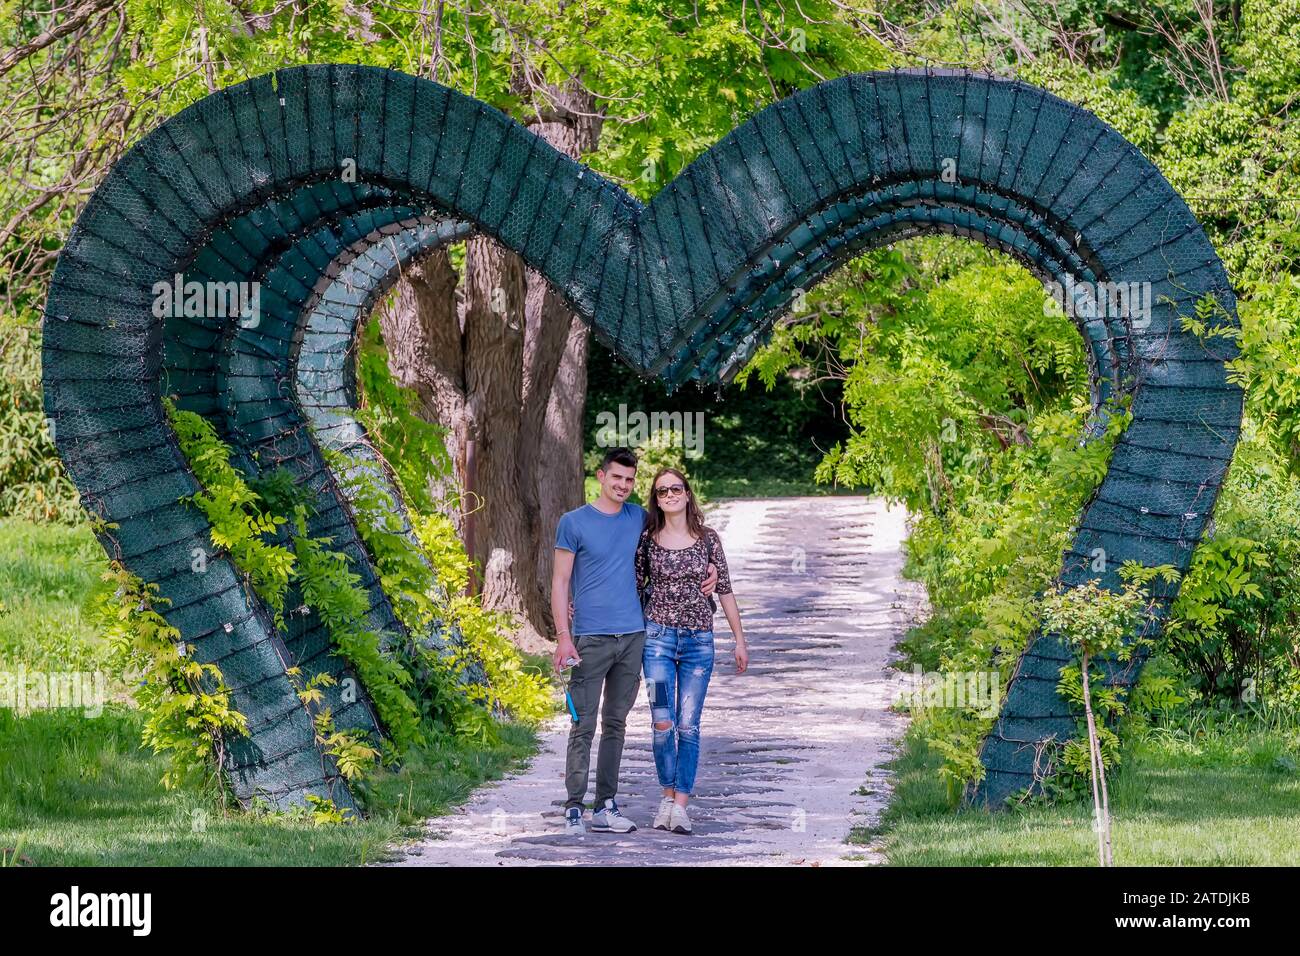 Un jeune couple engagé marche sous une arche verte en forme de coeur dans le parc public, Craiova, Roumanie Banque D'Images